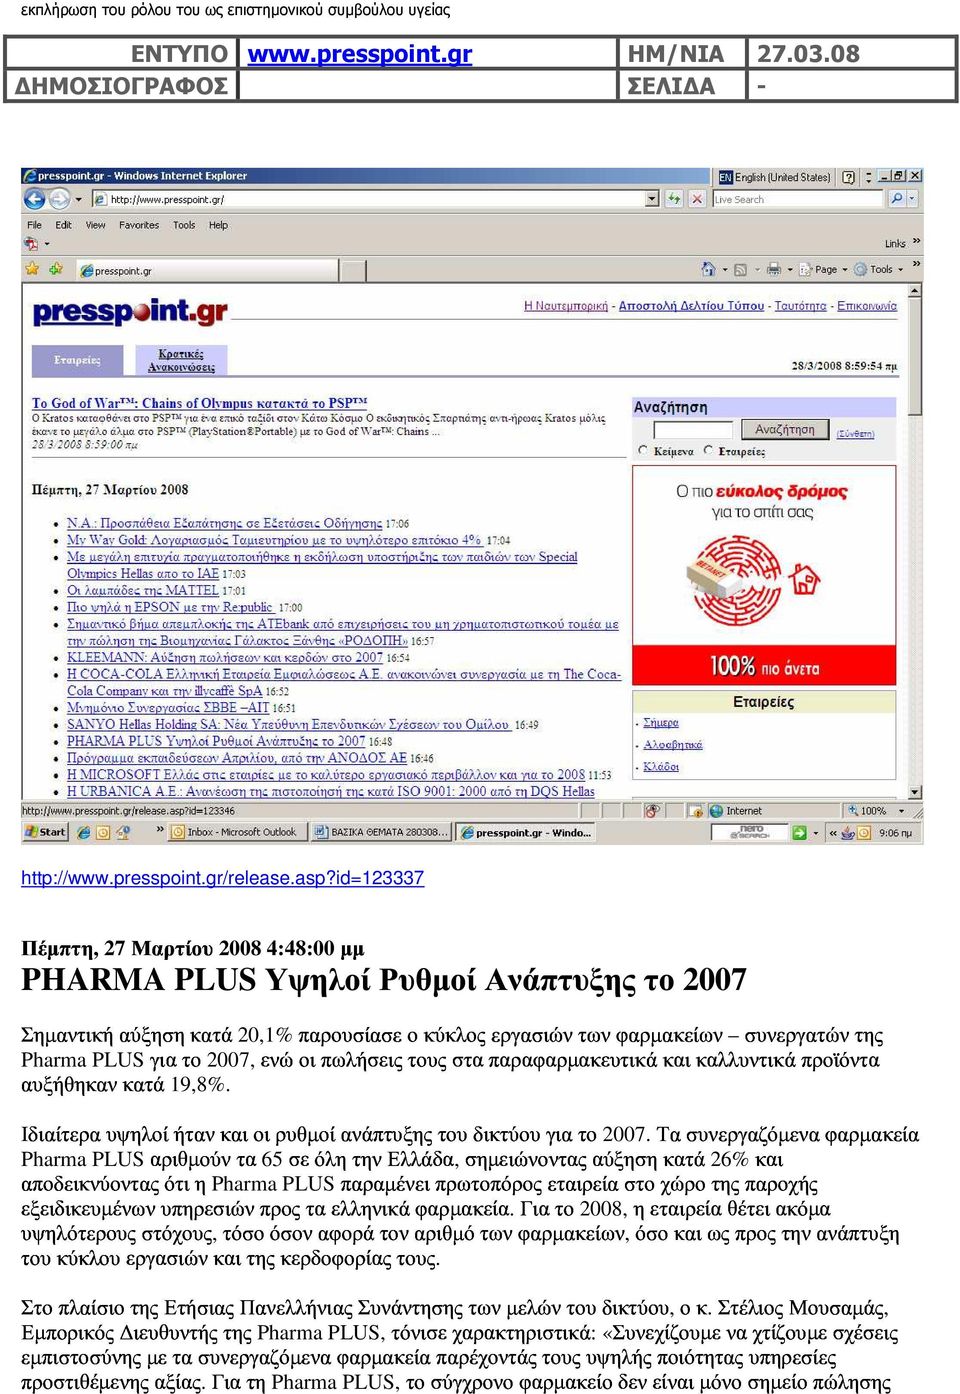 " # $ %& PHARMA PLUS 2007 ) ).# * ' )! +!,& $ 20,1% *& ' & " Pharma PLUS 2007, " &. #& 0 /" '. / & 19,8%.